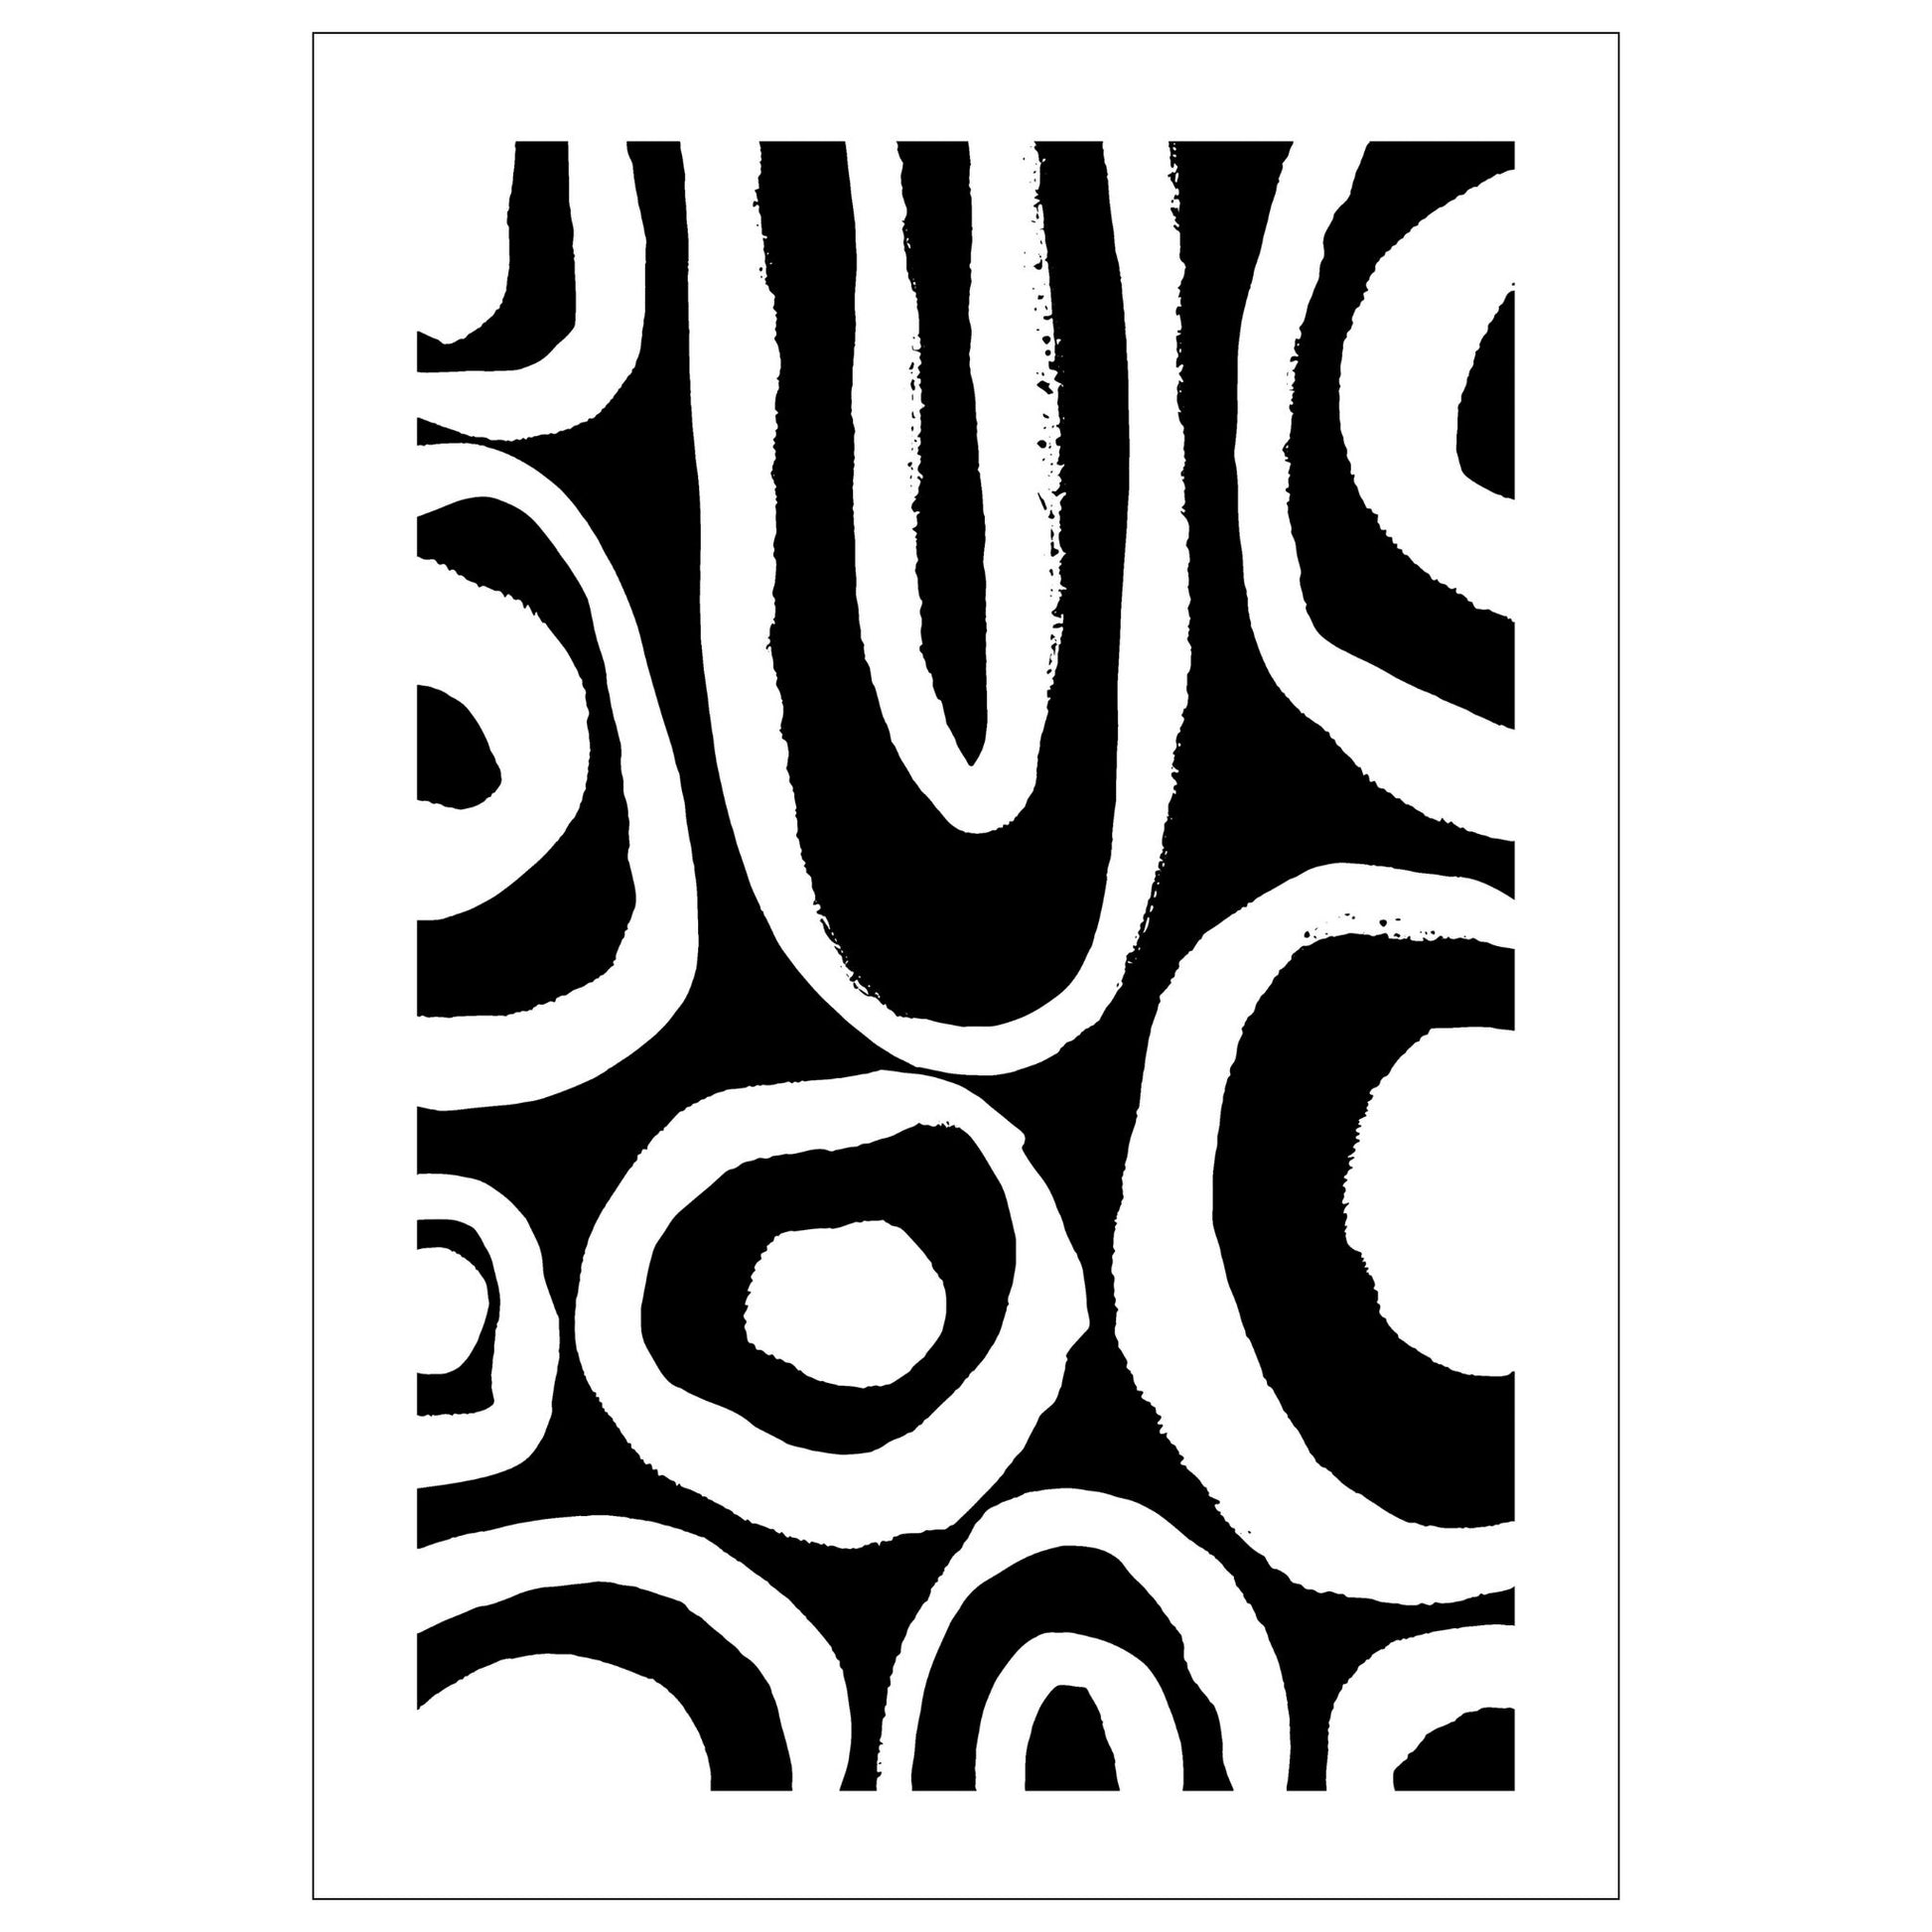 Modern Art - plakat i grafisk design i sort abstrakt mønster.